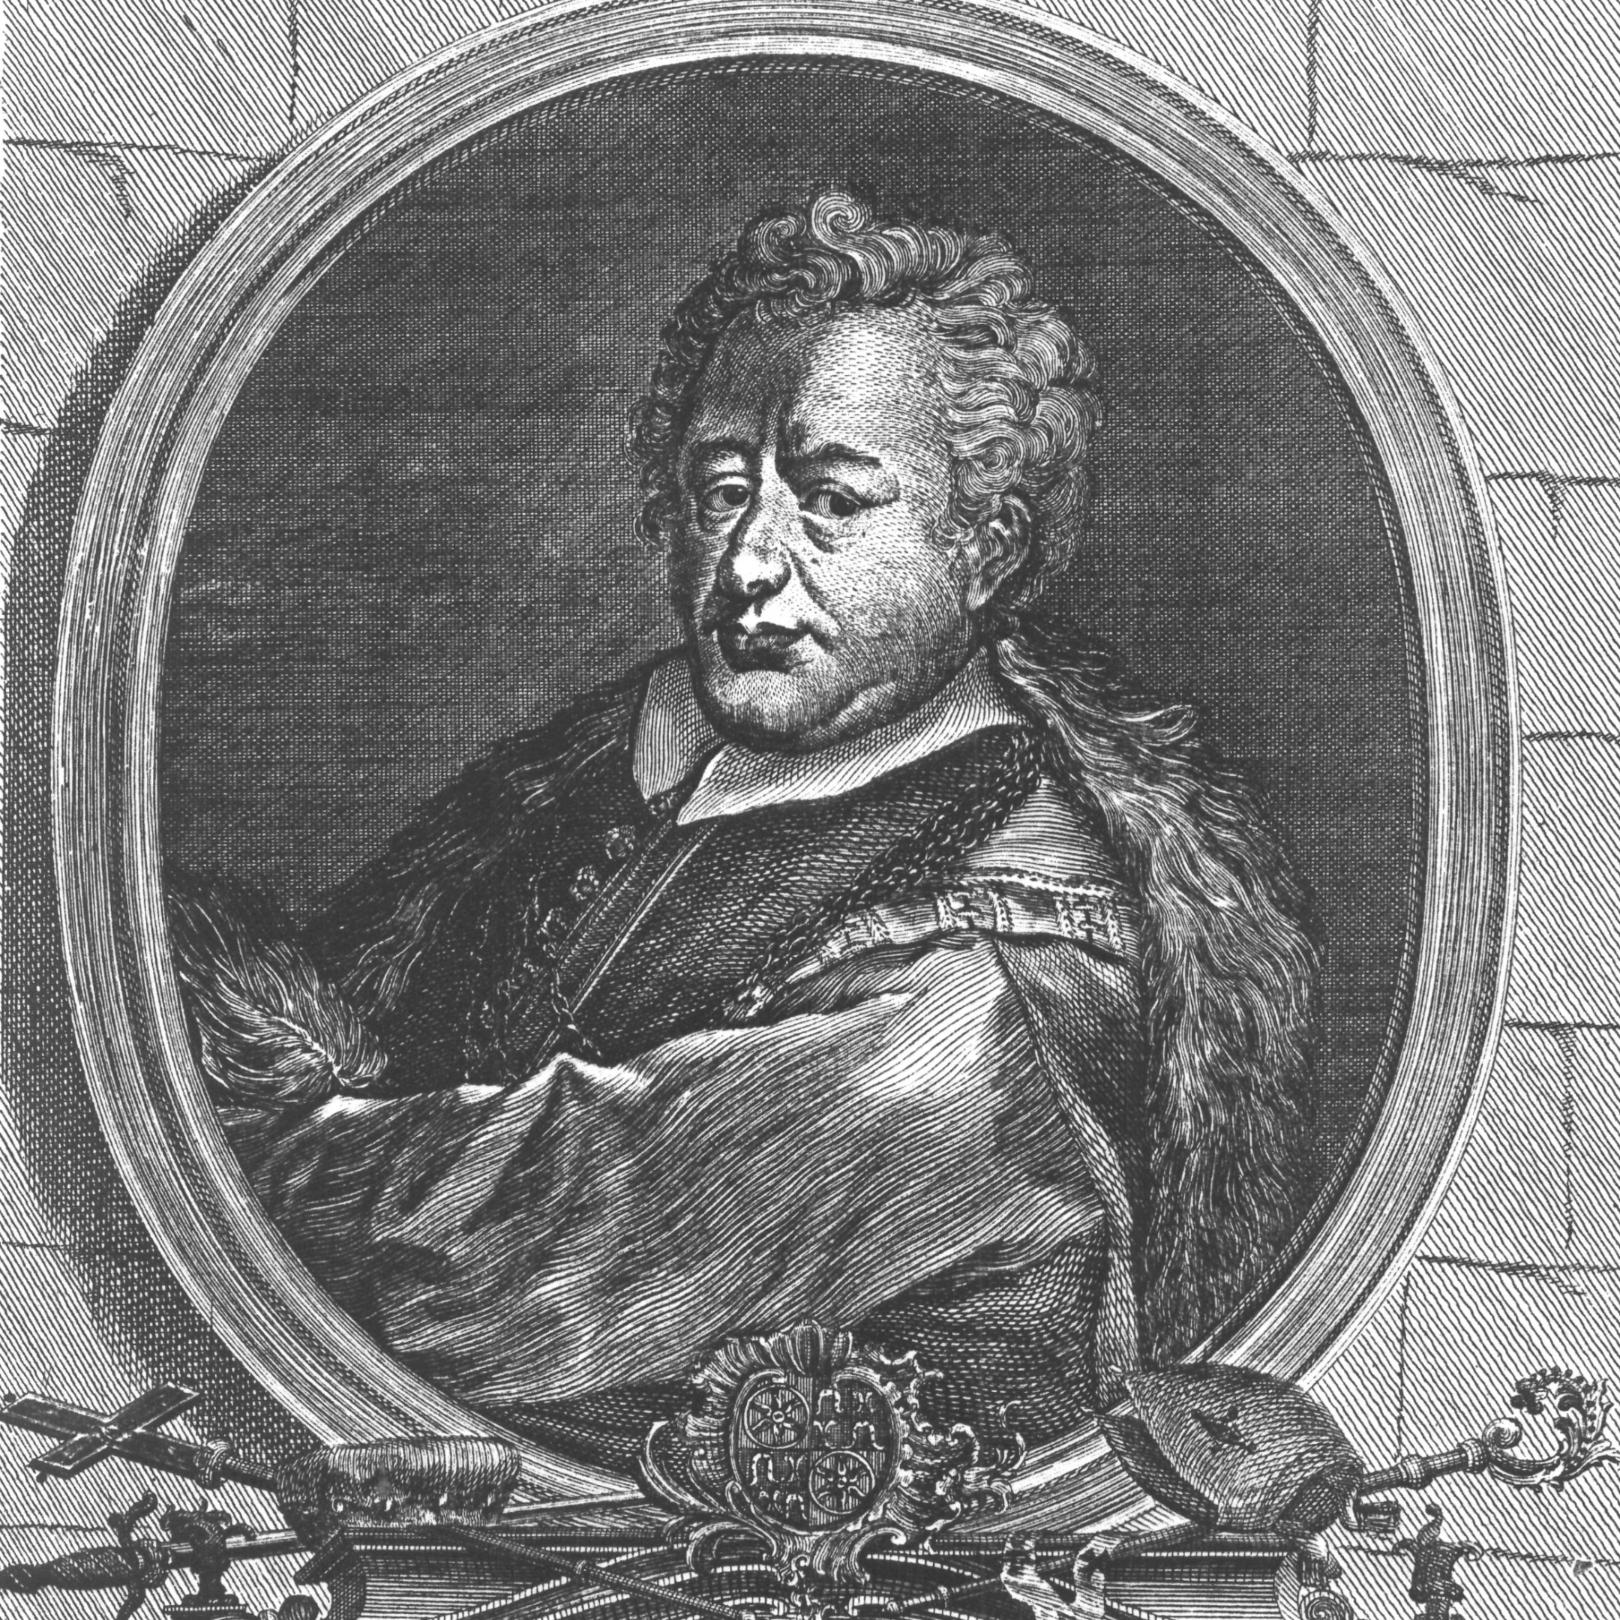 Heinrich II. Knoderer von Isny, gezeichnet ca. 1774 (c) Wilhelm Christian Rücker / IMKG